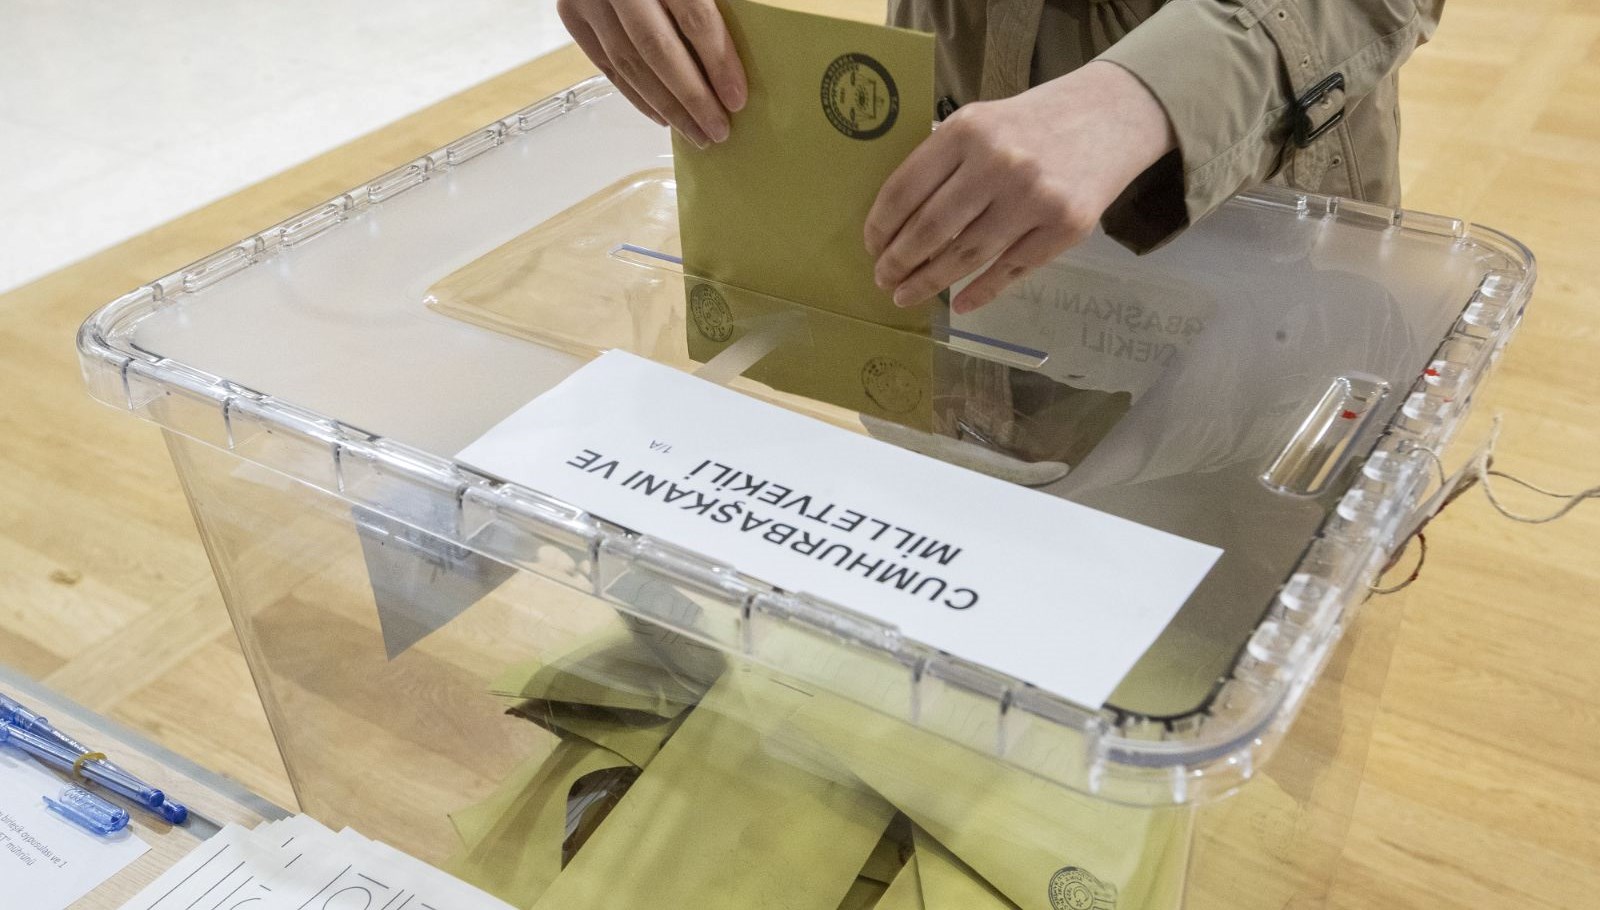 Yurt dışı temsilciliklerde kullanılan oy sayısı 2018 seçimindeki oy sayısı geçti